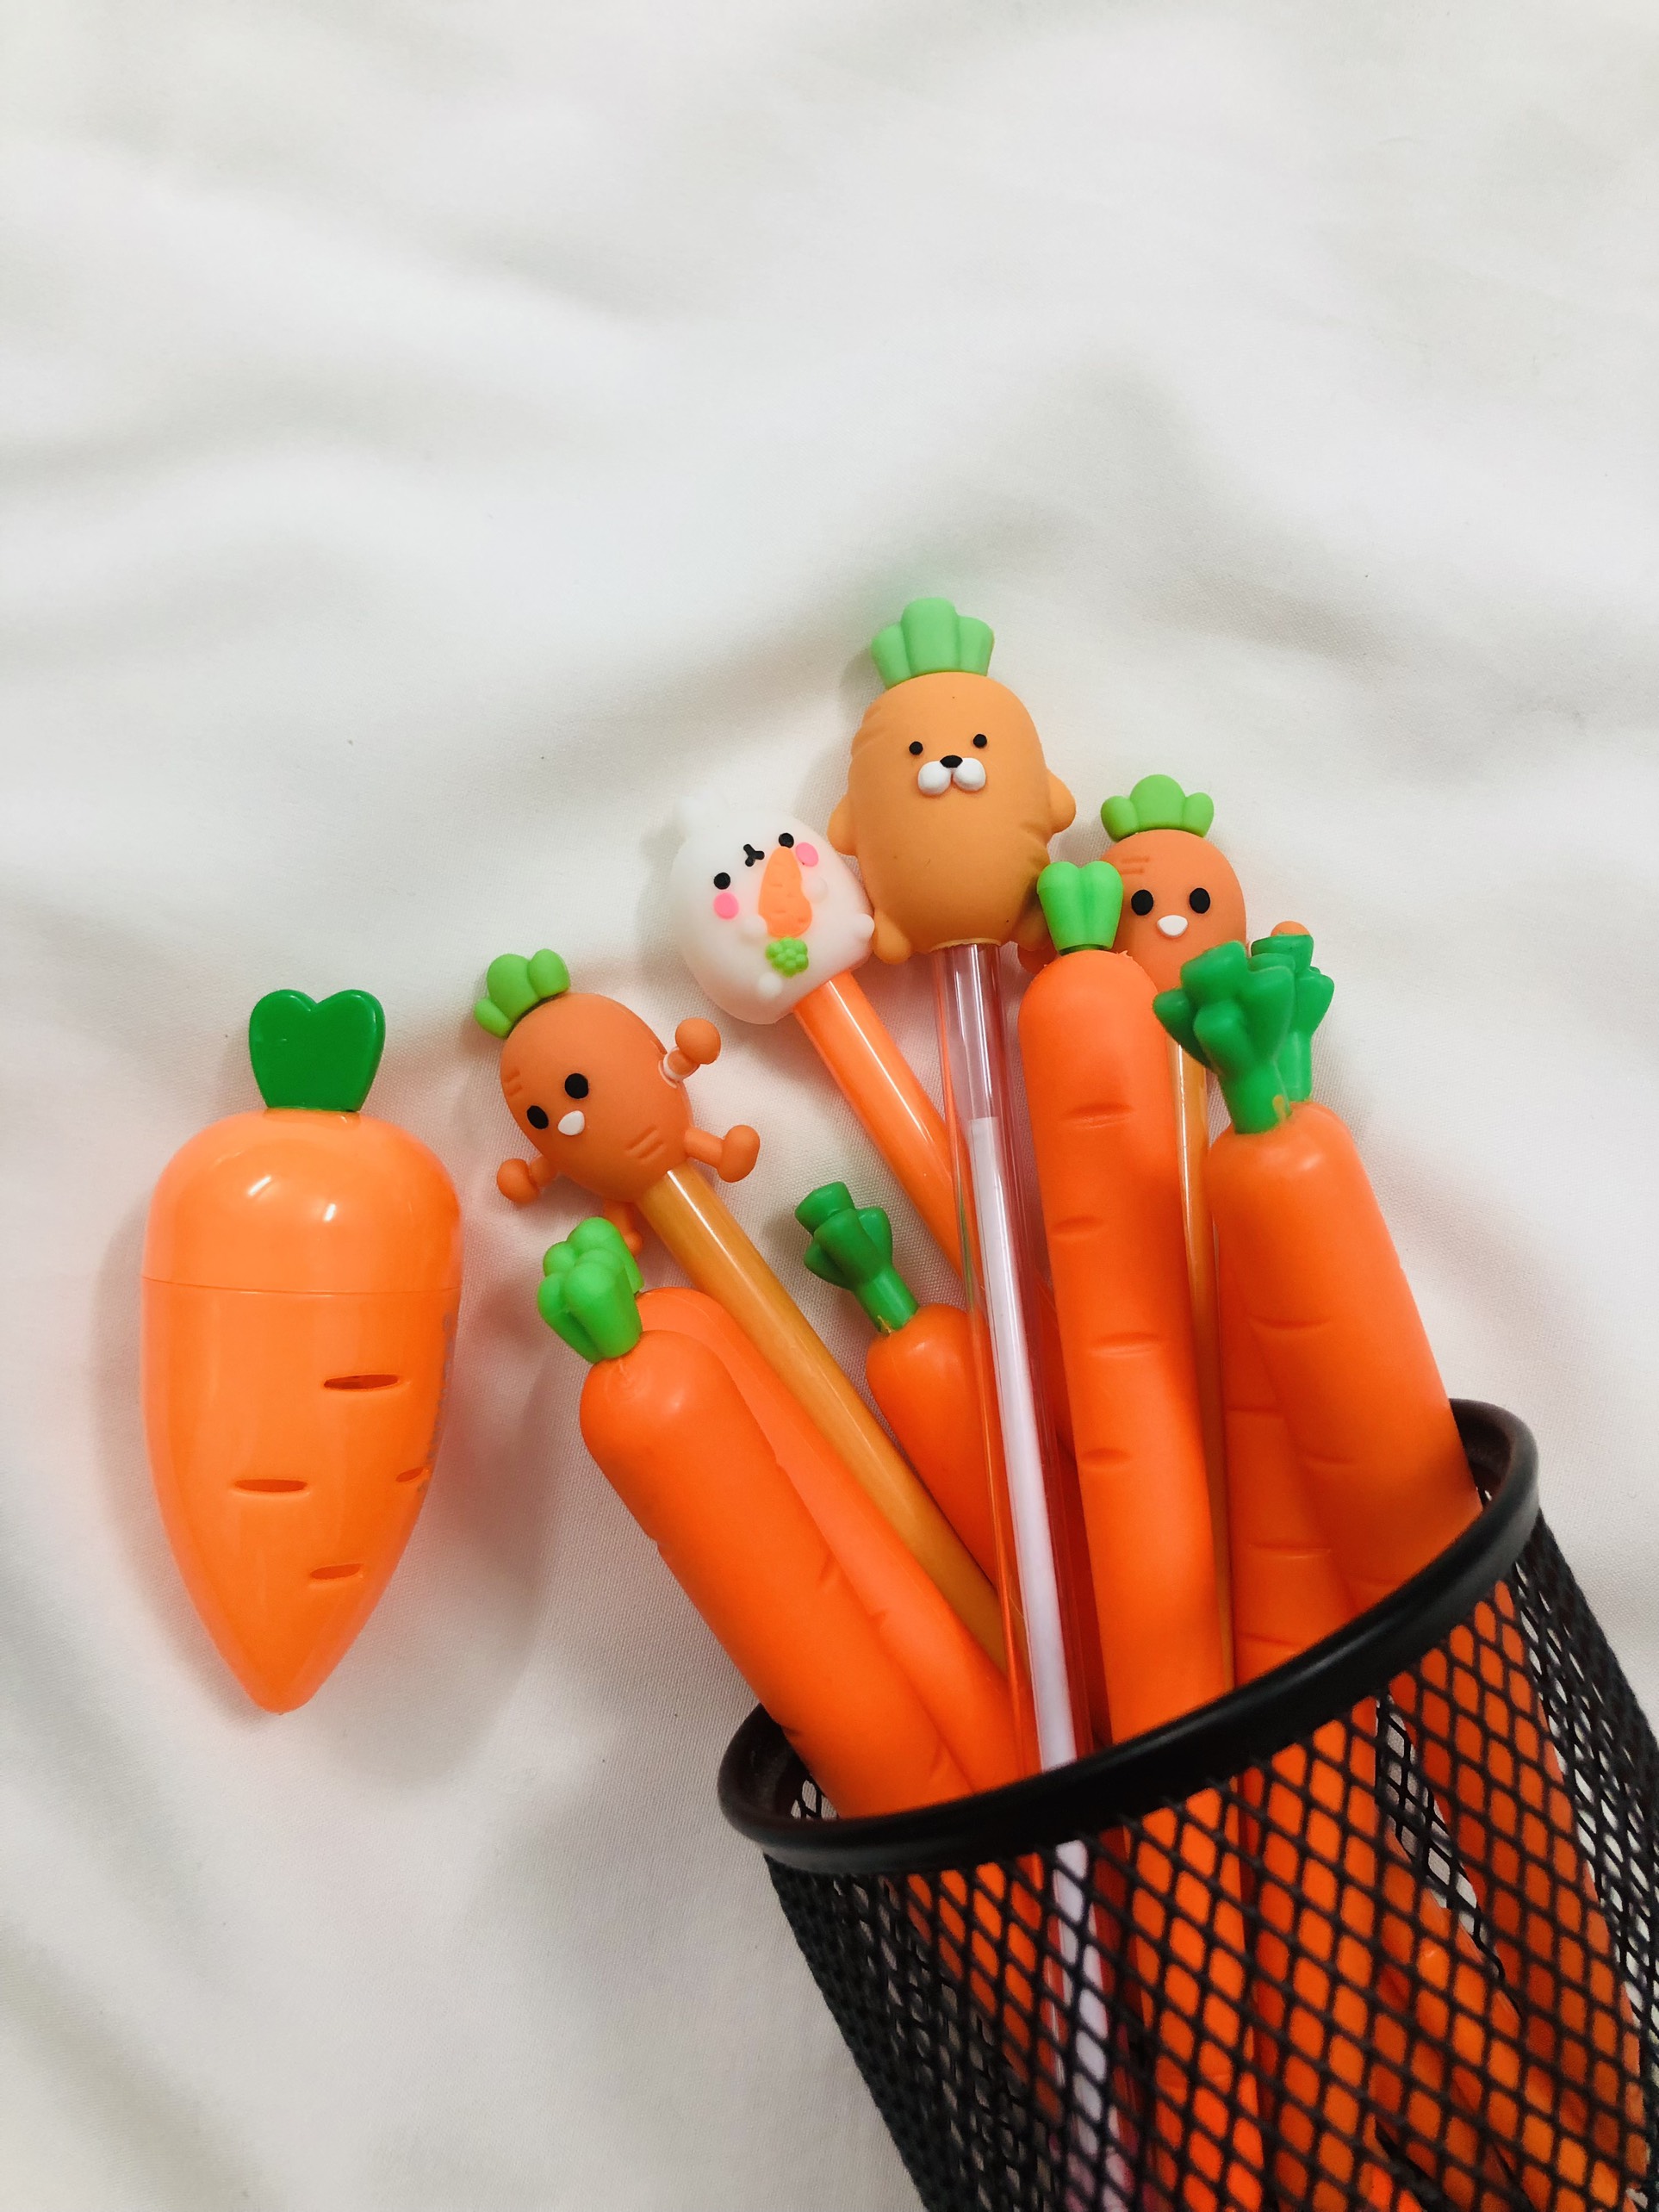 Mô hình củ cà rốt bằng nhựa dùng để dạy trẻ về thế giới xung quanh